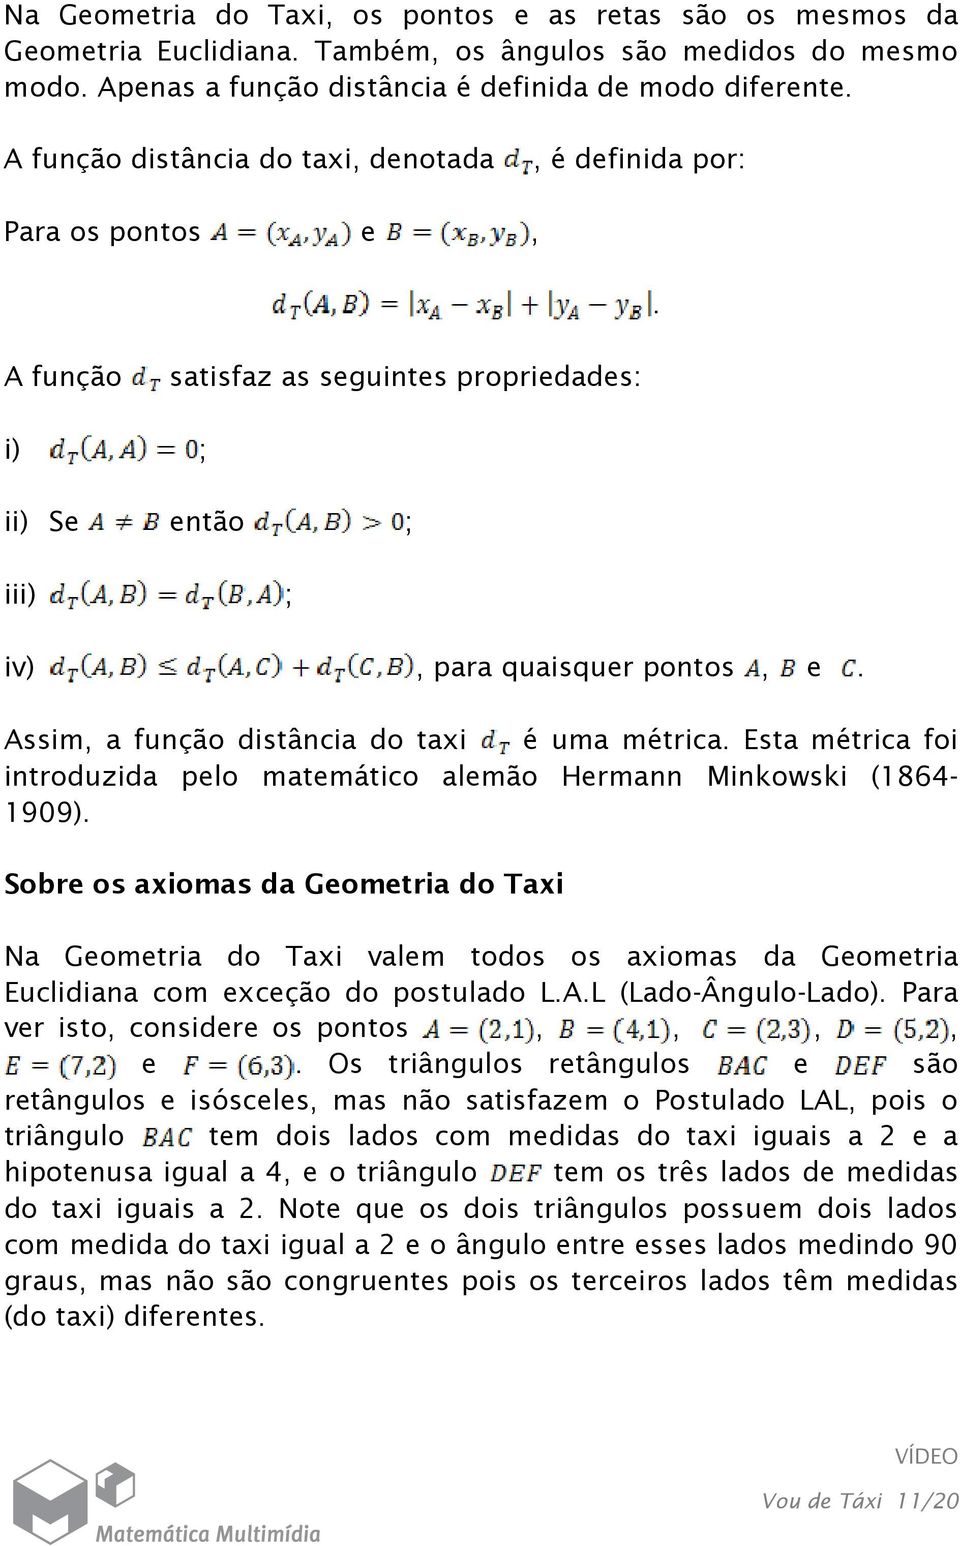 métrica Esta métrica foi introduzida pelo matemático alemão Hermann Minkowski (1864-1909) Sobre os axiomas da Geometria do Taxi Na Geometria do Taxi valem todos os axiomas da Geometria Euclidiana com